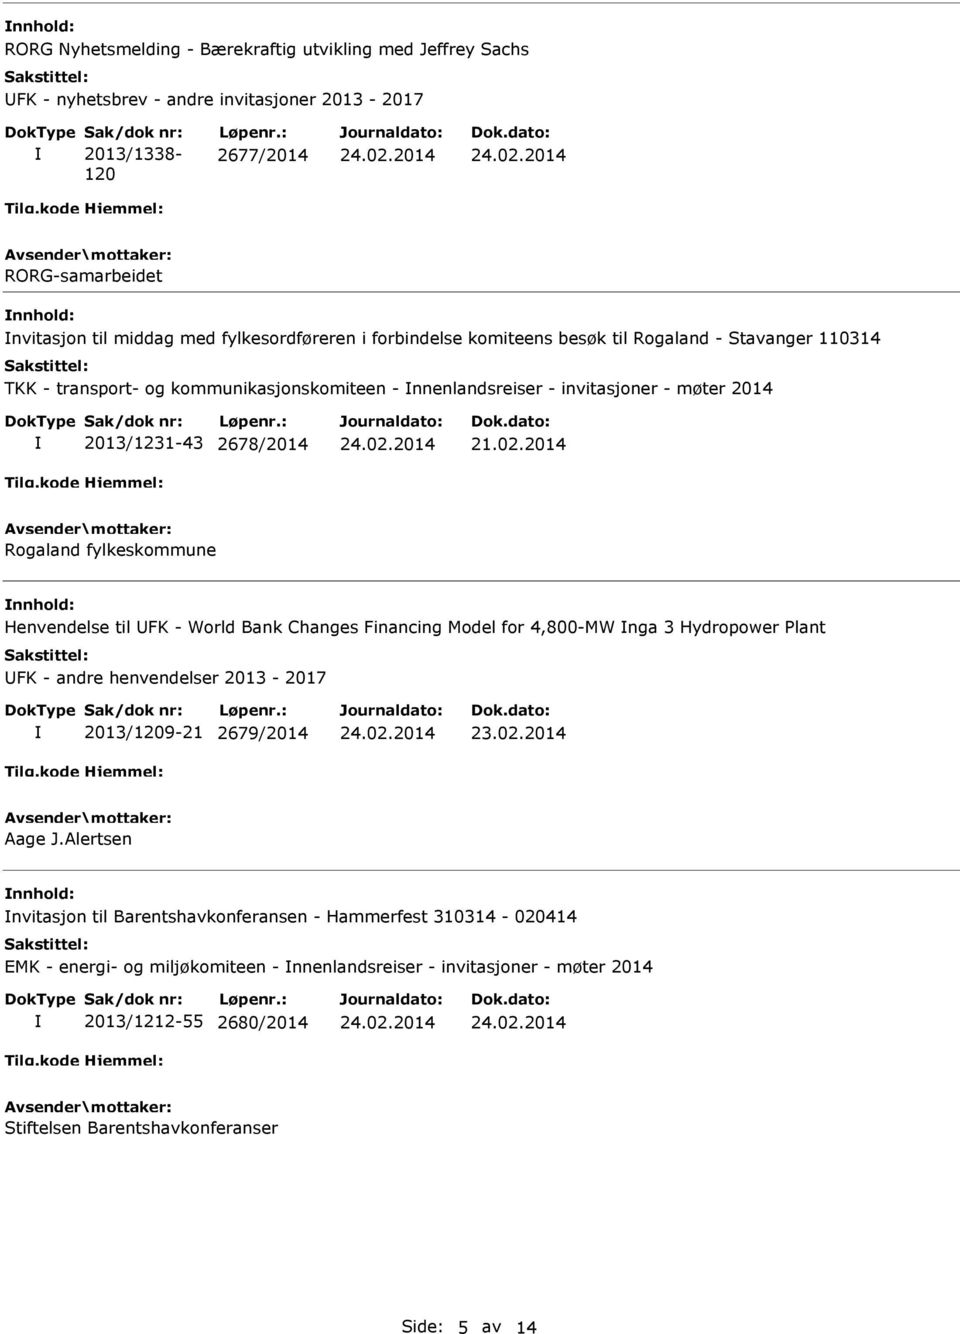 invitasjoner - møter 2014 2013/1231-43 2678/2014 Rogaland fylkeskommune Henvendelse til FK - World Bank Changes Financing Model for 4,800-MW nga 3 Hydropower Plant FK - andre henvendelser 2013-2017